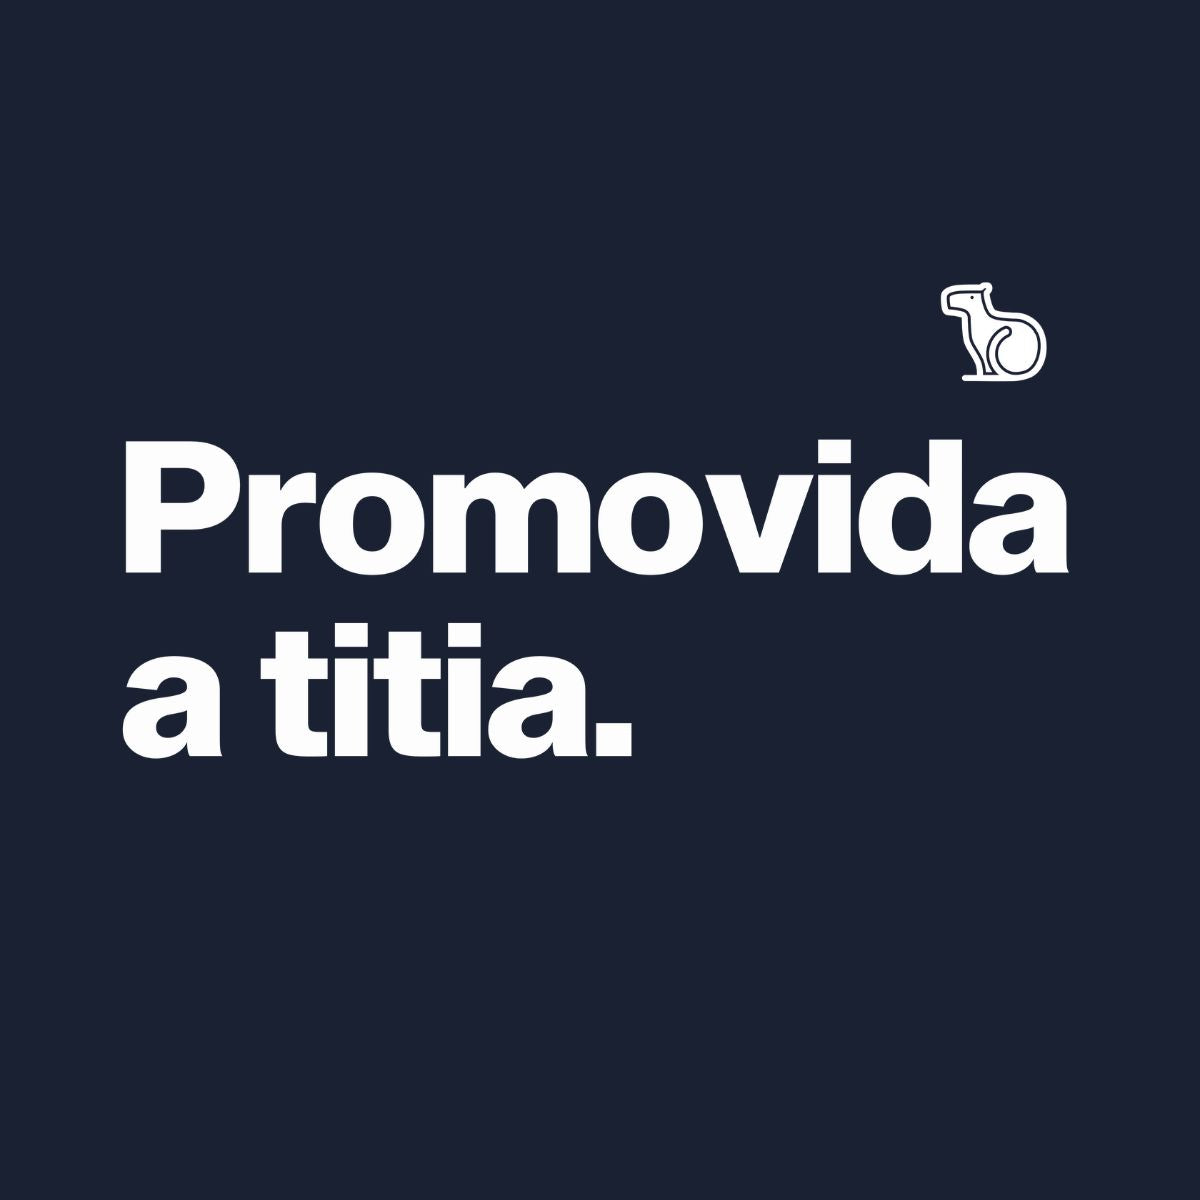 capa Camiseta com a frase "promovida a titia" feminina azul.